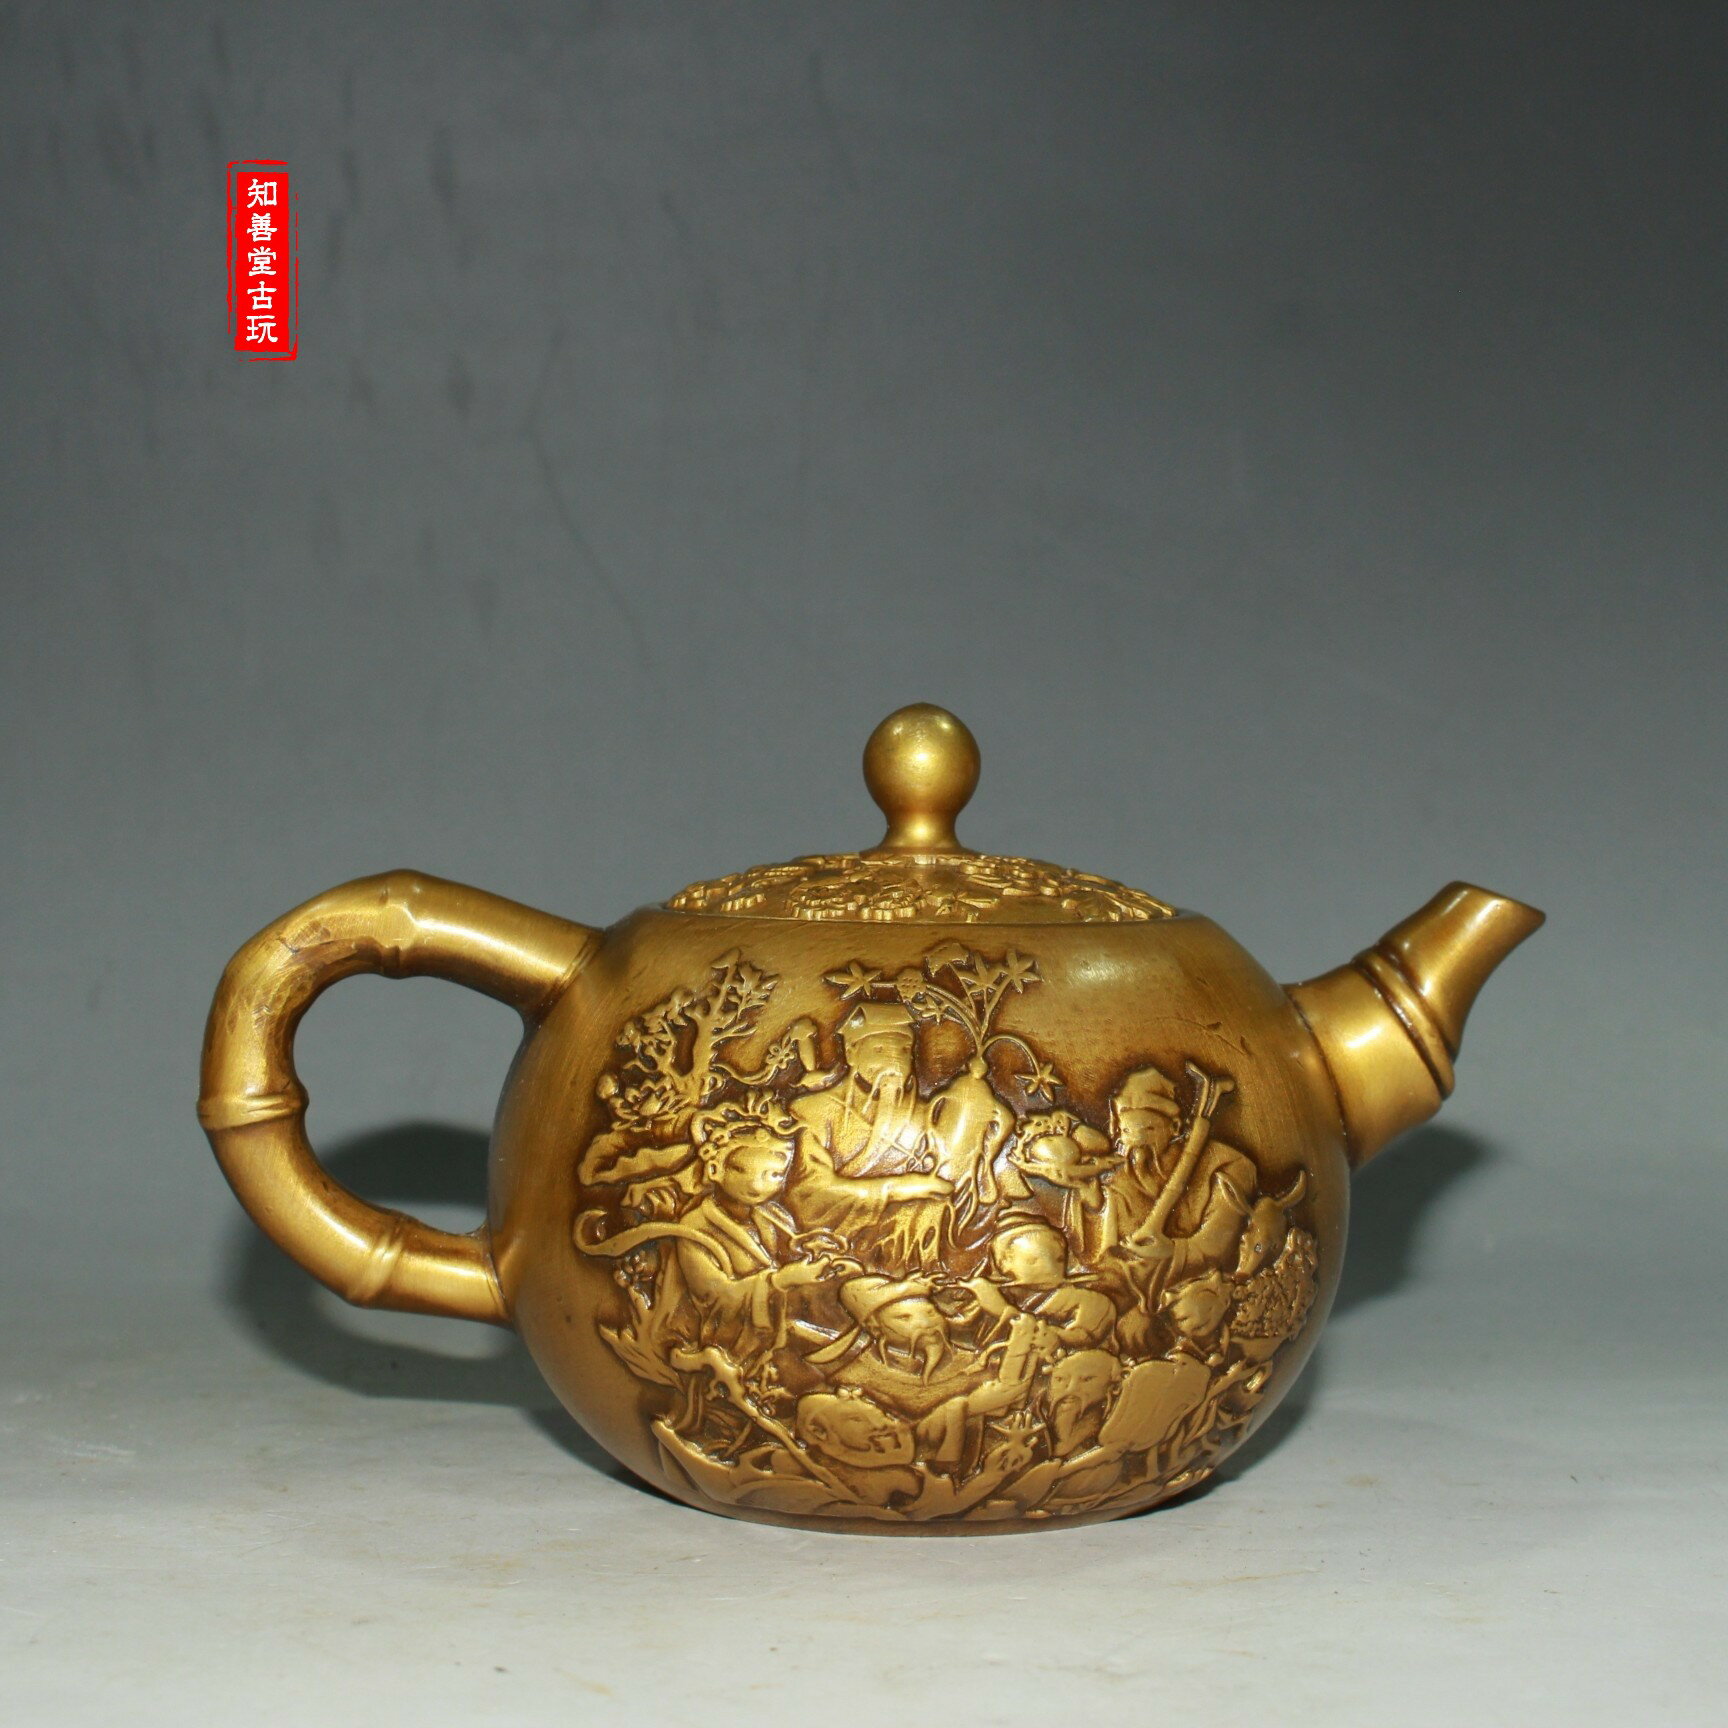 古玩老物件八仙人物提梁銅茶壺精工打造老壺古董收藏居家小擺件